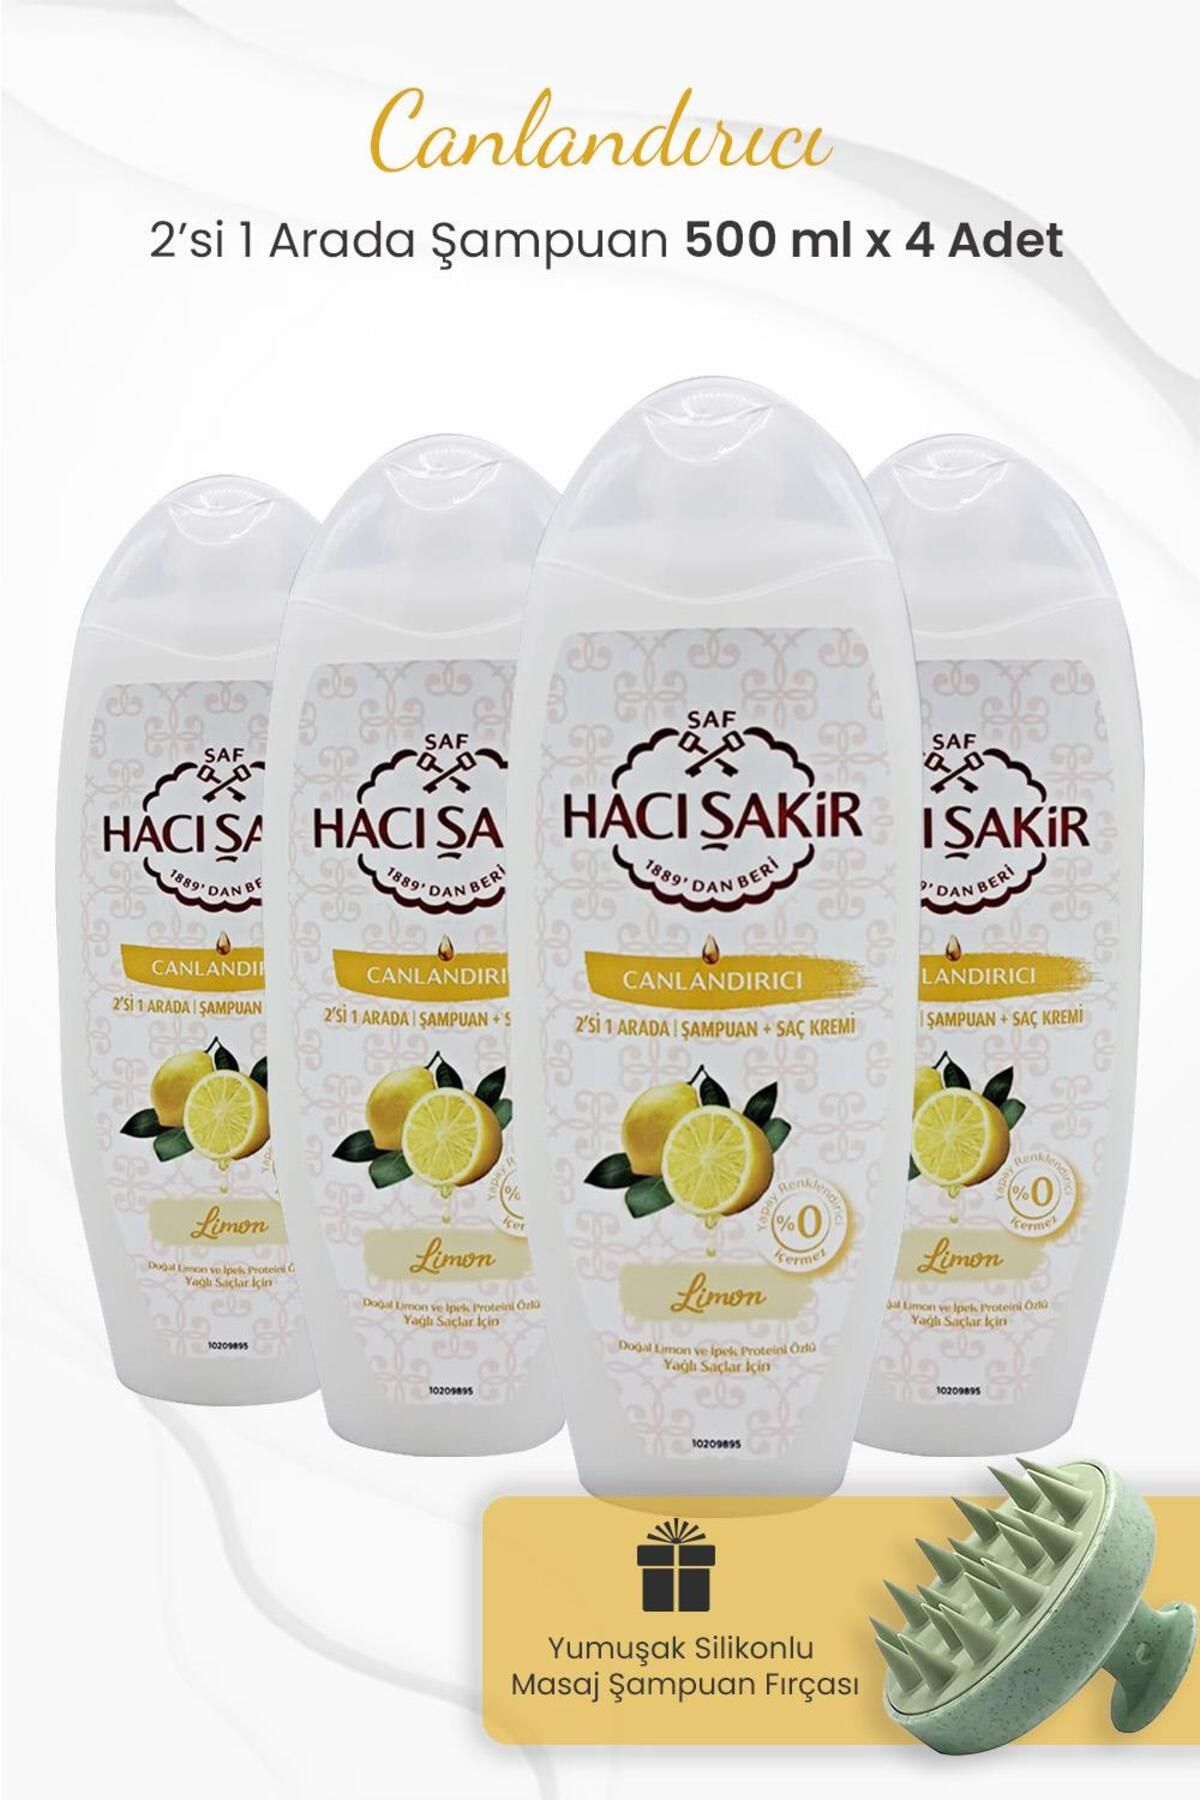 Hacı Şakir Limon 2si 1 Arada Şampuan 500 ml x 4 Adet ve Şampuan Fırçası Yeşil